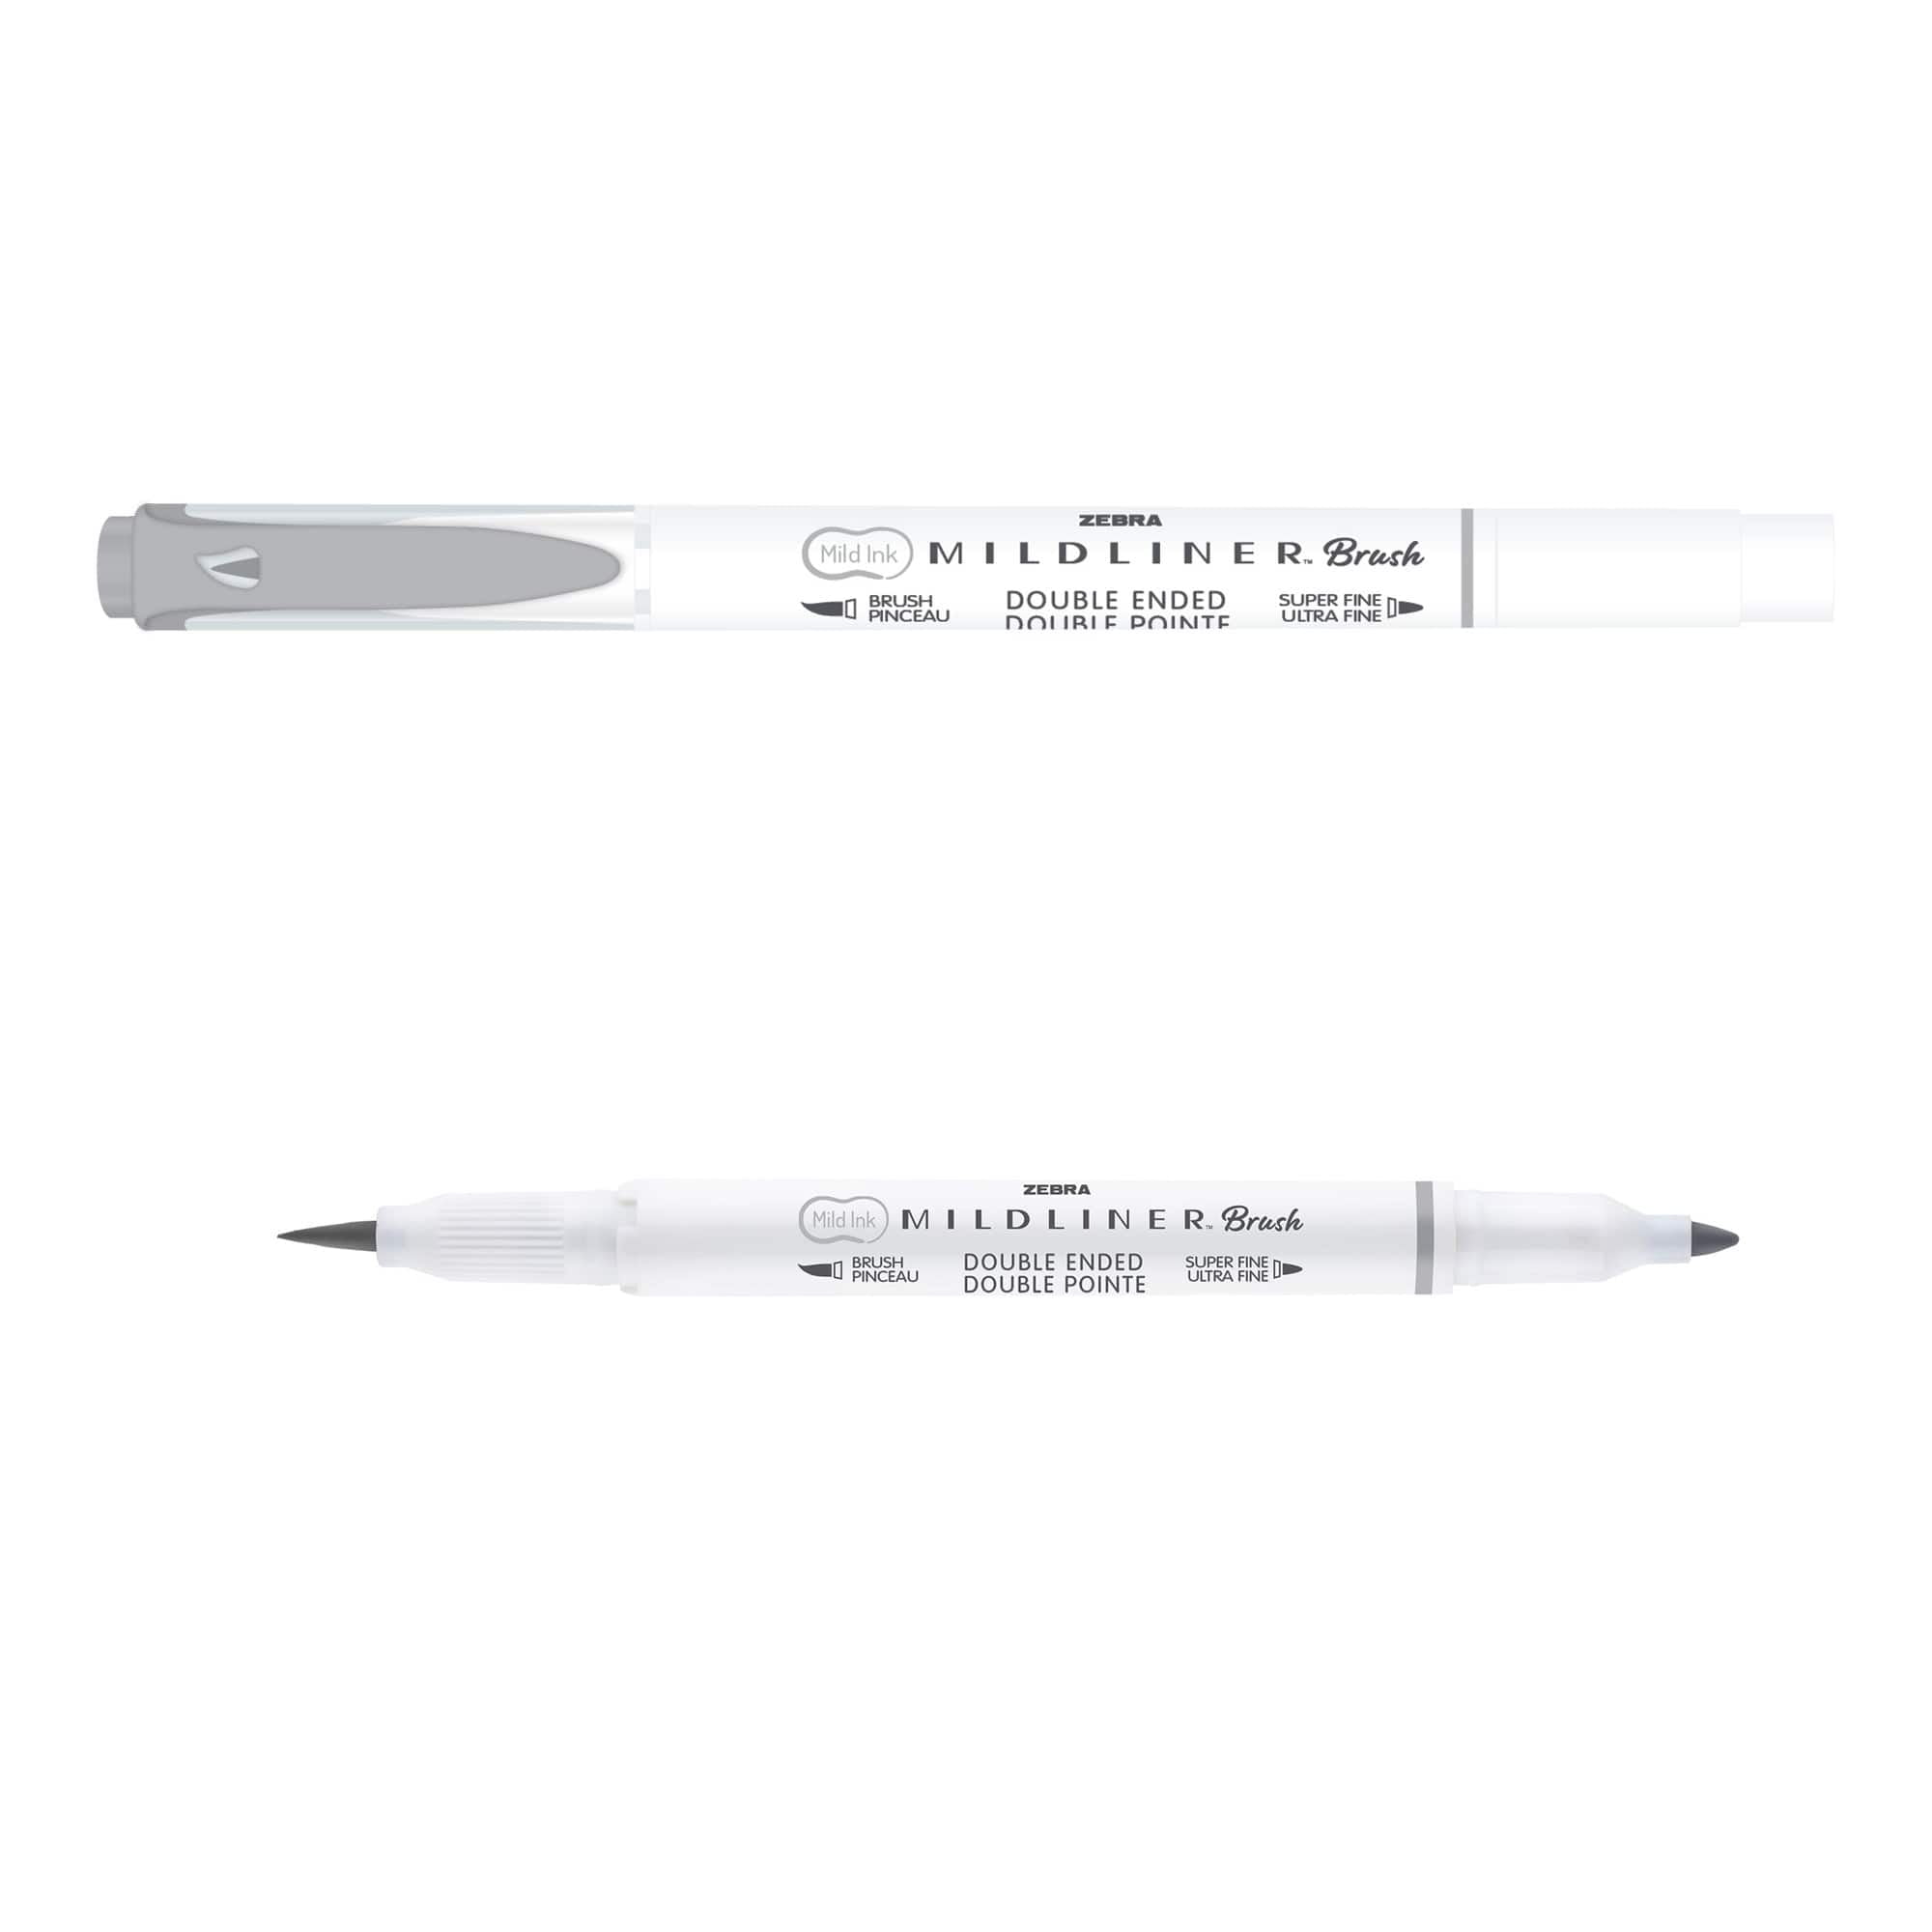 Zebra Smoky Brush Pen - Set of 5 - A